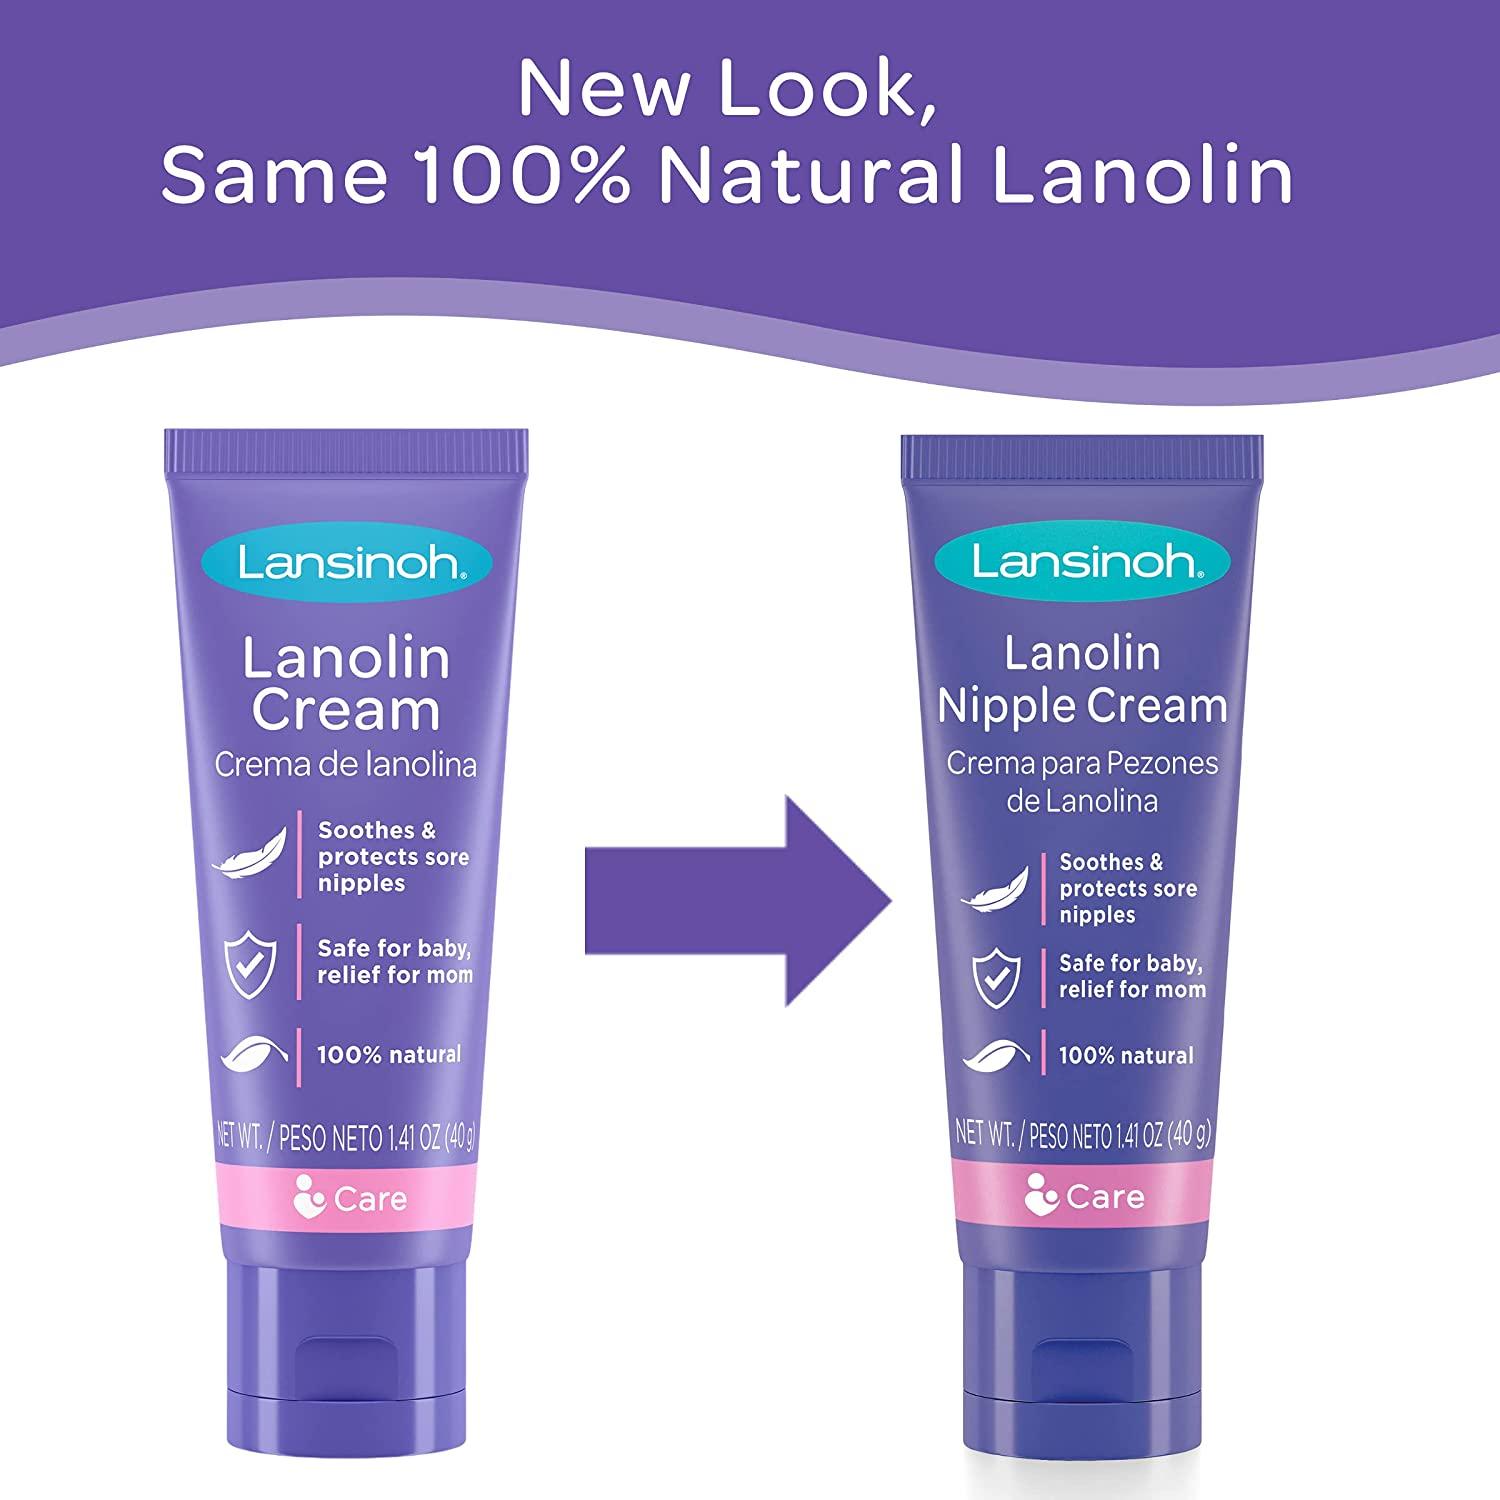 Lansinoh Lanolin Nipple Cream, 1.41 oz/40 g Ingredients and Reviews